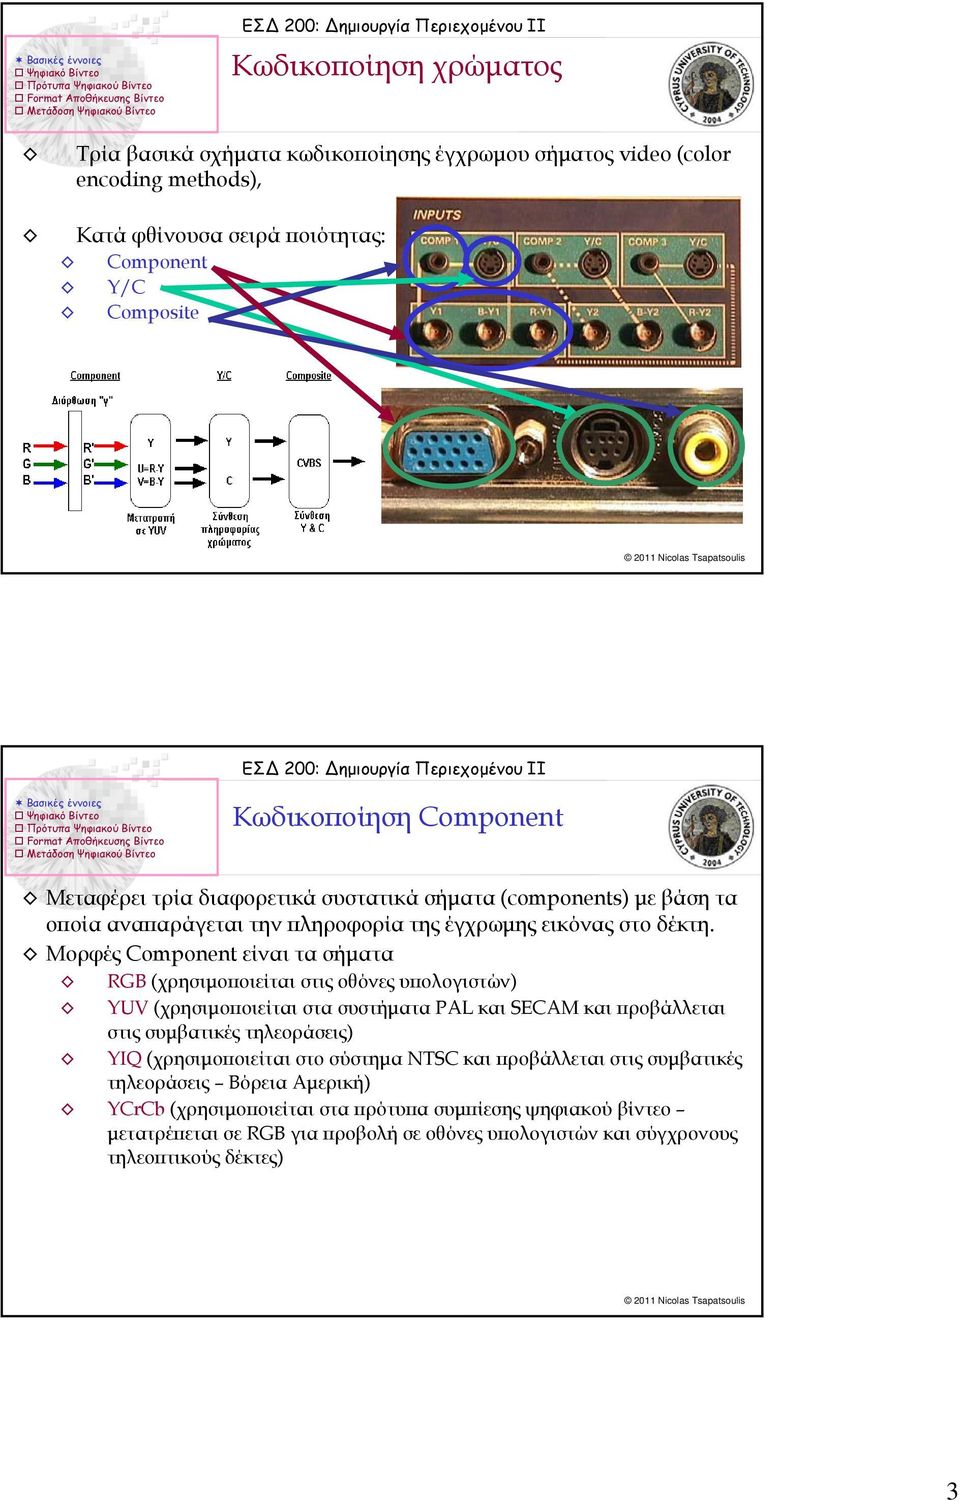 Μορφές Component είναι τα σήματα RGB (χρησιμοποιείται στις οθόνες υπολογιστών) YUV (χρησιμοποιείται στα συστήματα PAL και SECAM και προβάλλεται στις συμβατικές τηλεοράσεις) YIQ